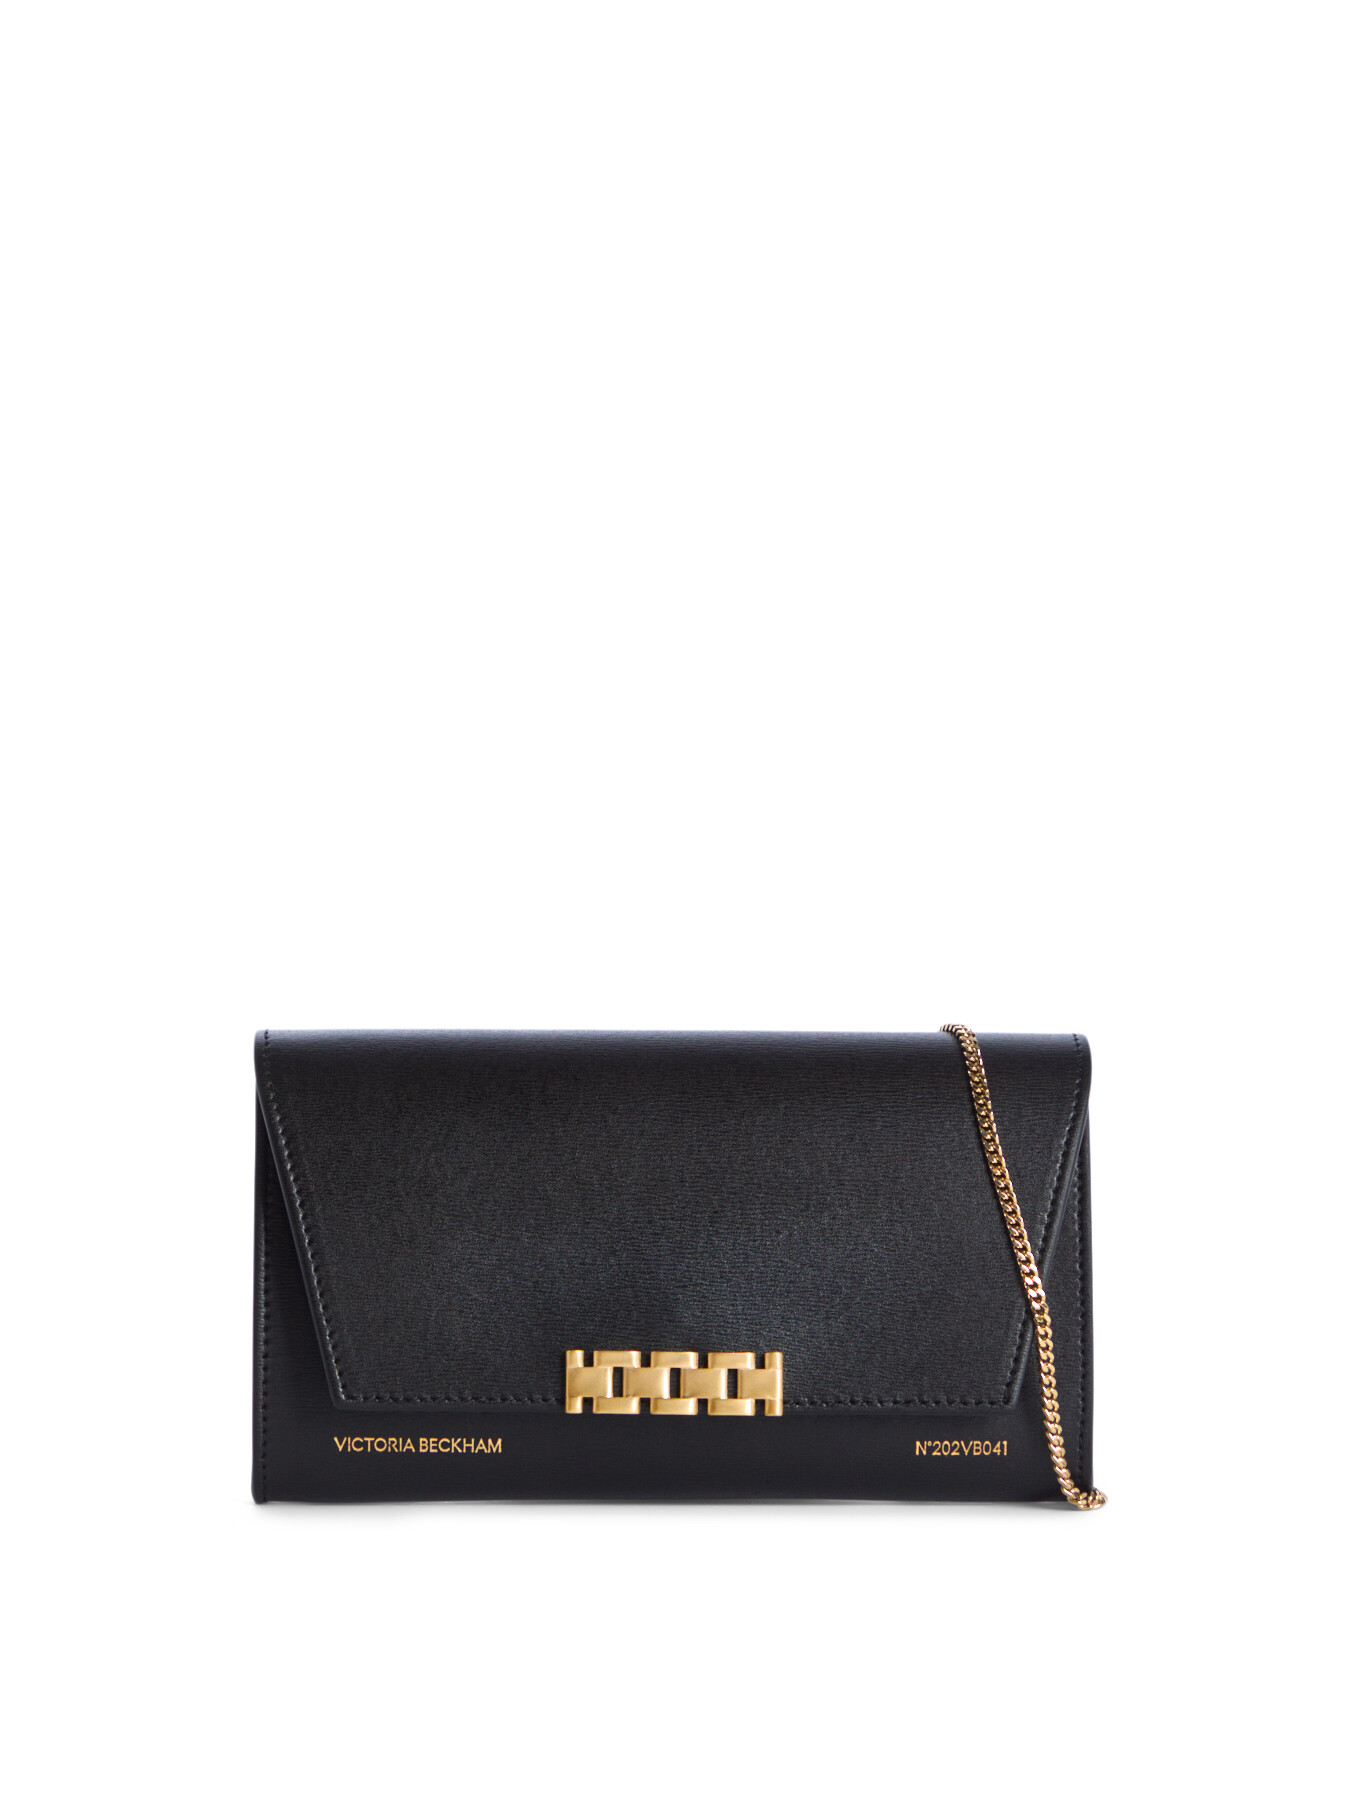 Victoria Beckham Women's Black Wallet On Chain Beige In Gold